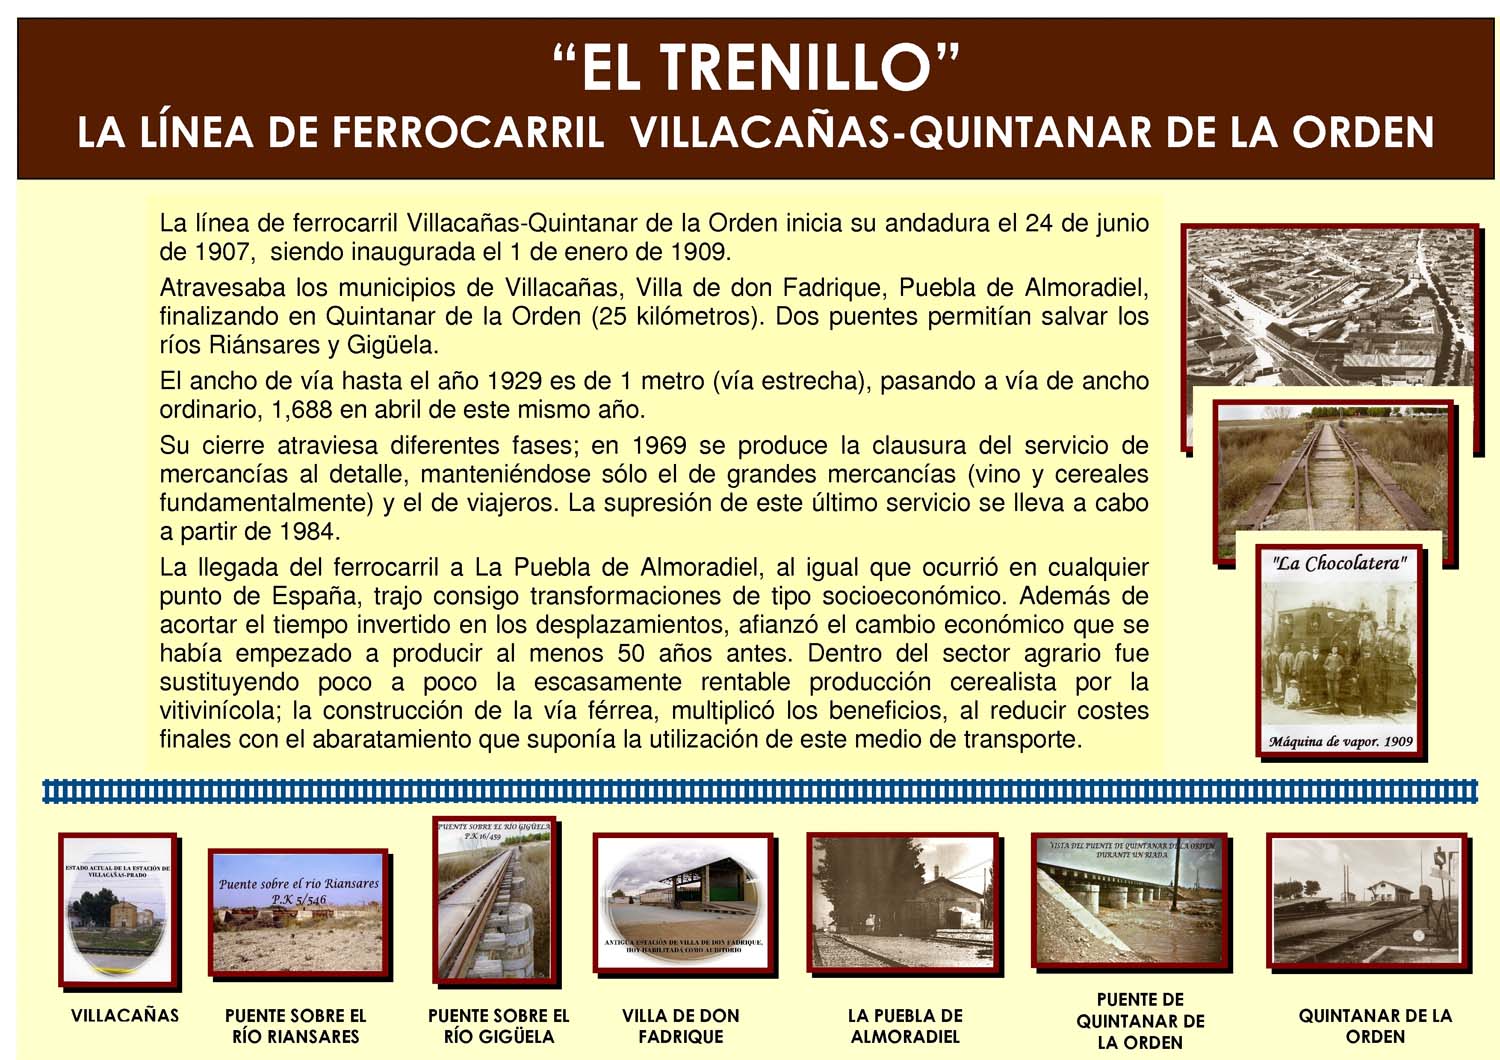 Historia de El Trenillo